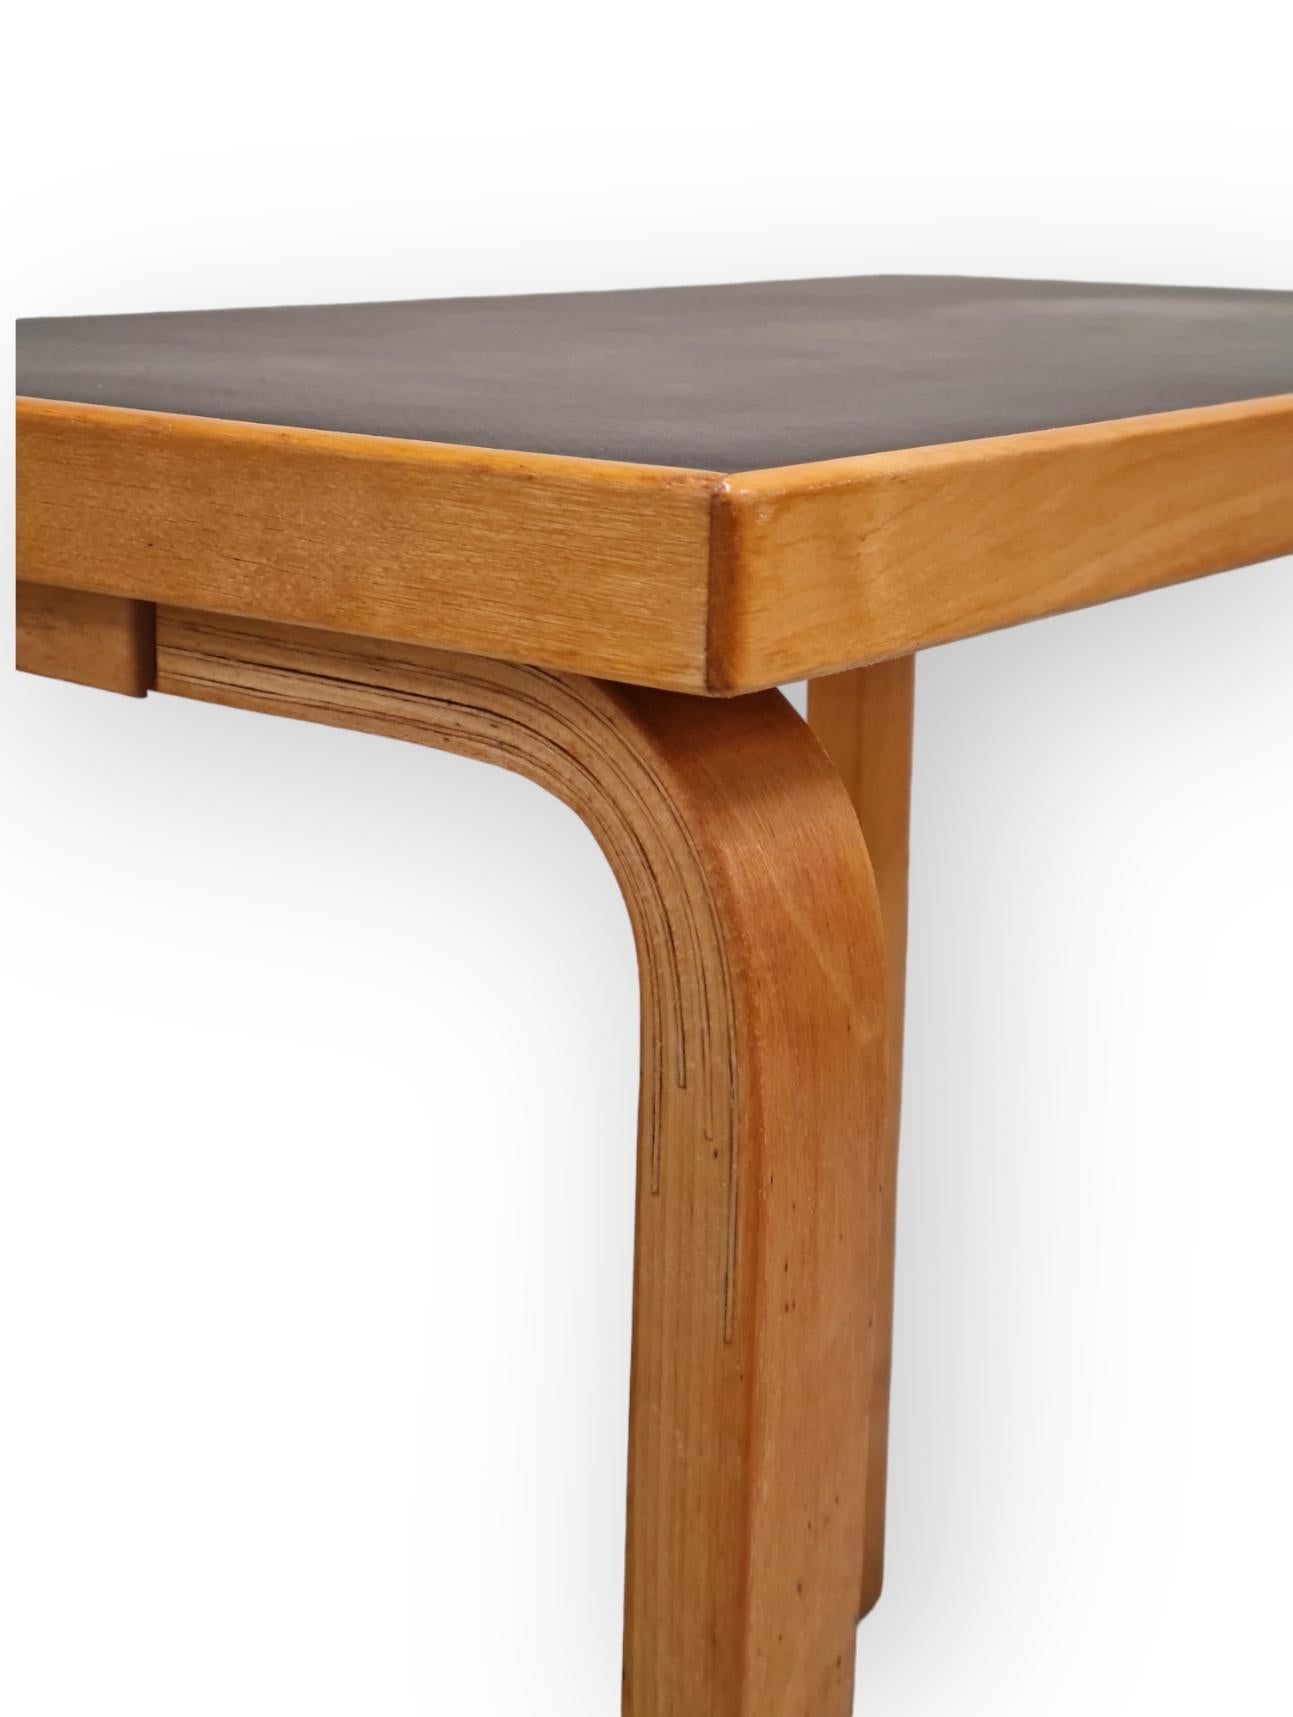 Finnish Alvar aalto Side Table Model 86 for Artek, 1930s For Sale